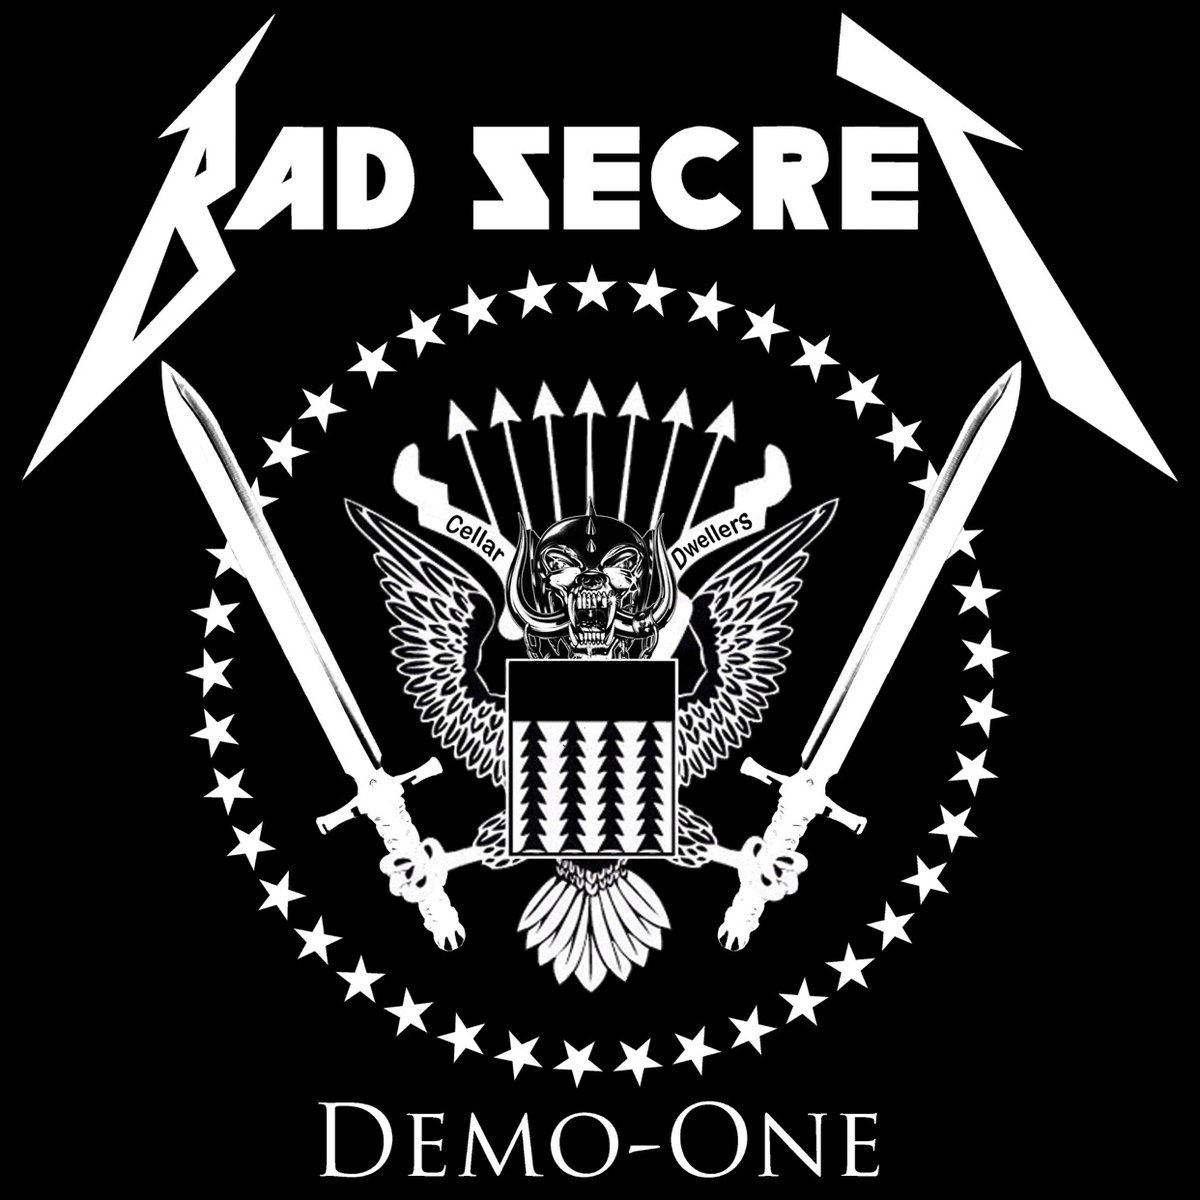 Image of Bad Secret - Demo One Cd or Cassette